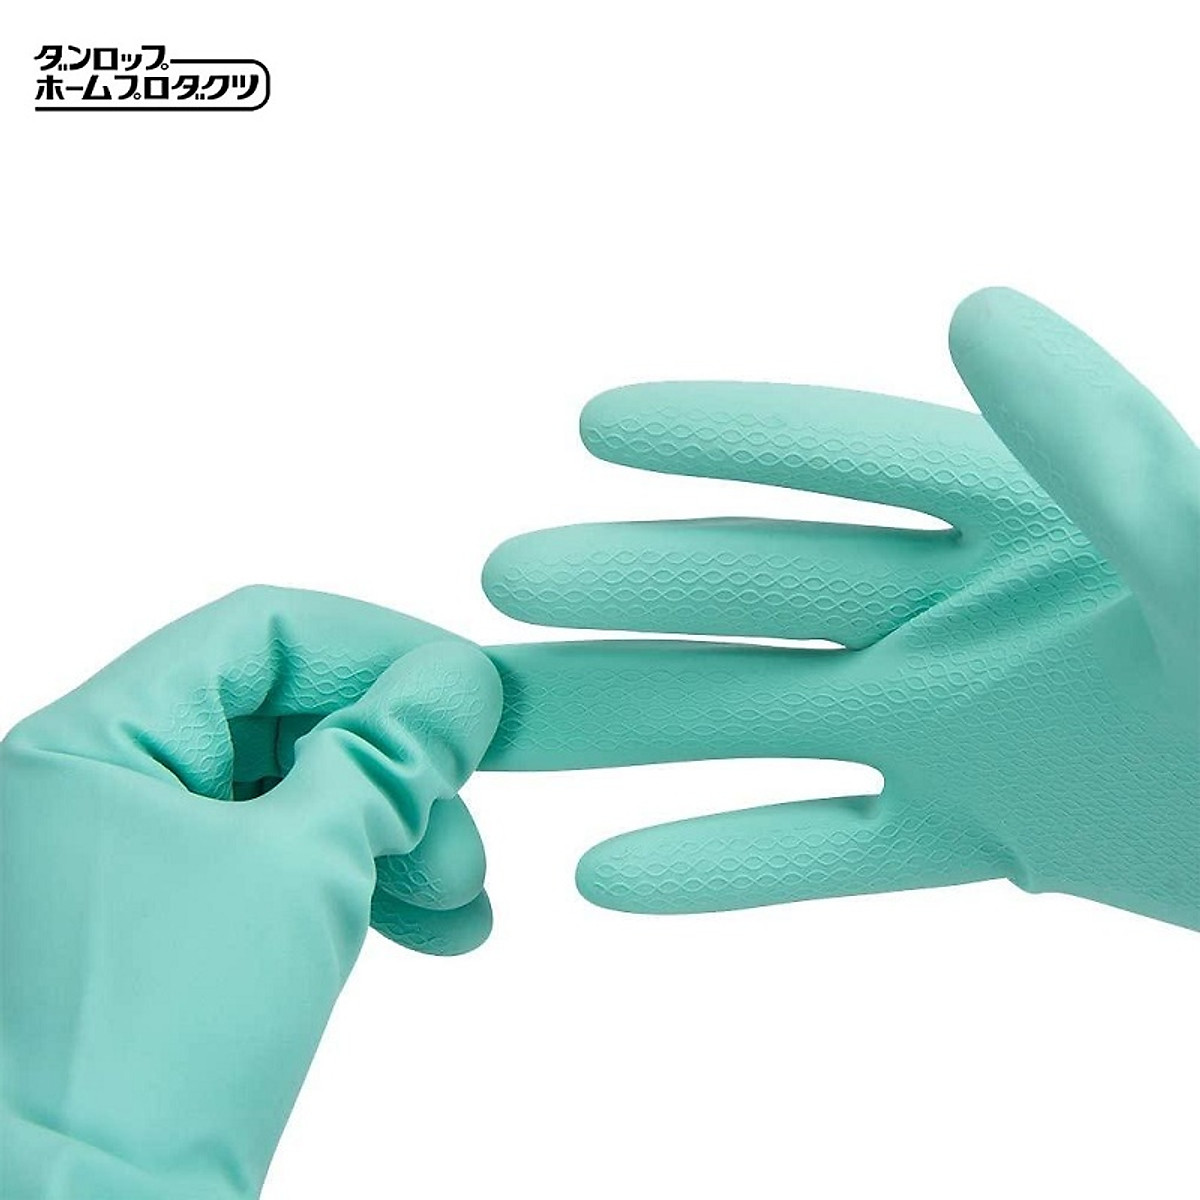 Set găng tay cao su nhà bếp siêu mềm hàng nội địa Nhật Bản